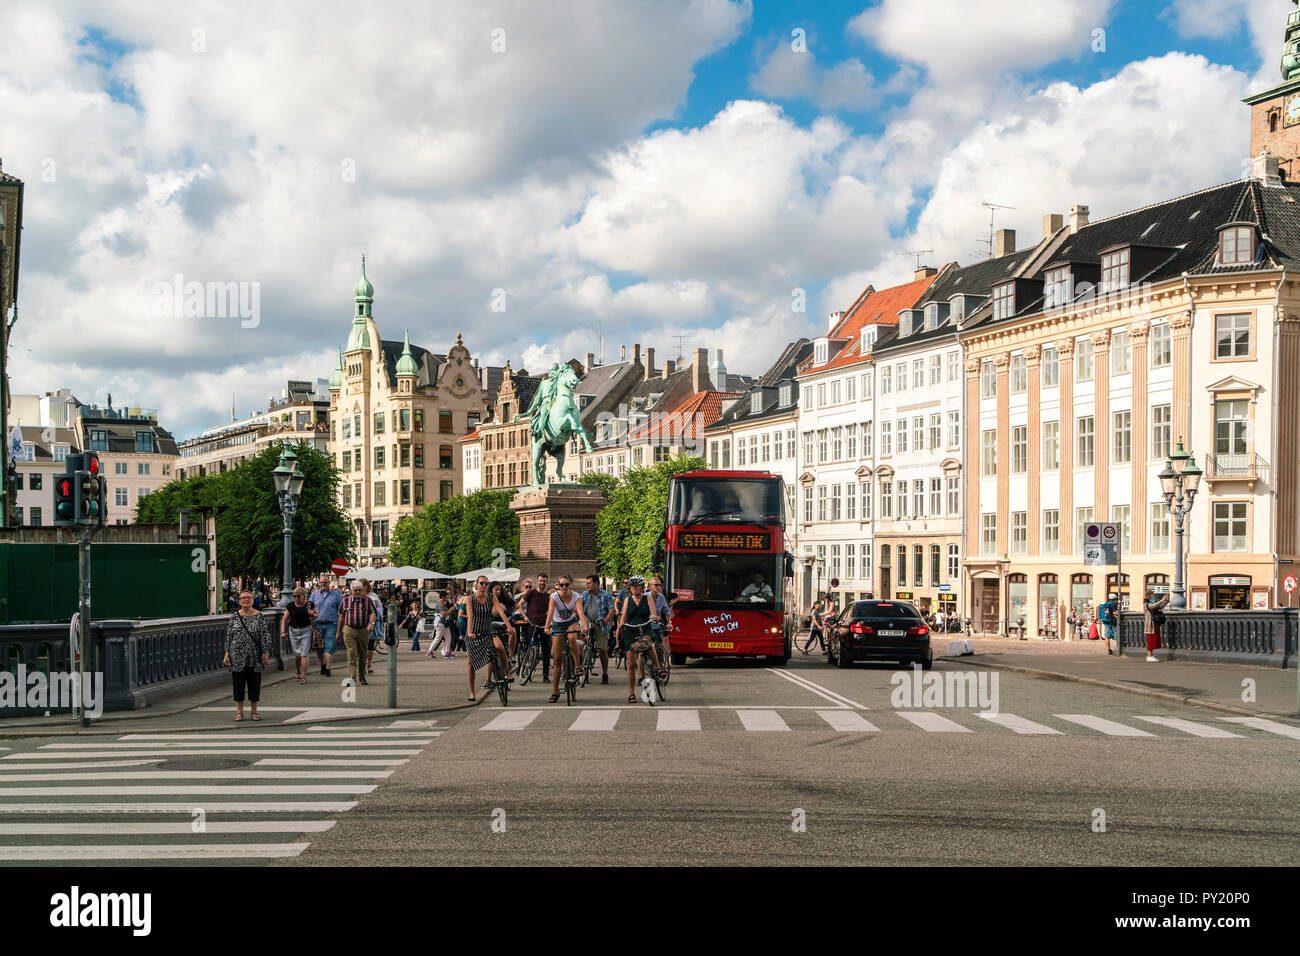 Hojbro Plads, un quadrato con il vescovo Absalon statua commemora il fondatore della città di Copenaghen, Copenaghen, Danimarca Foto Stock